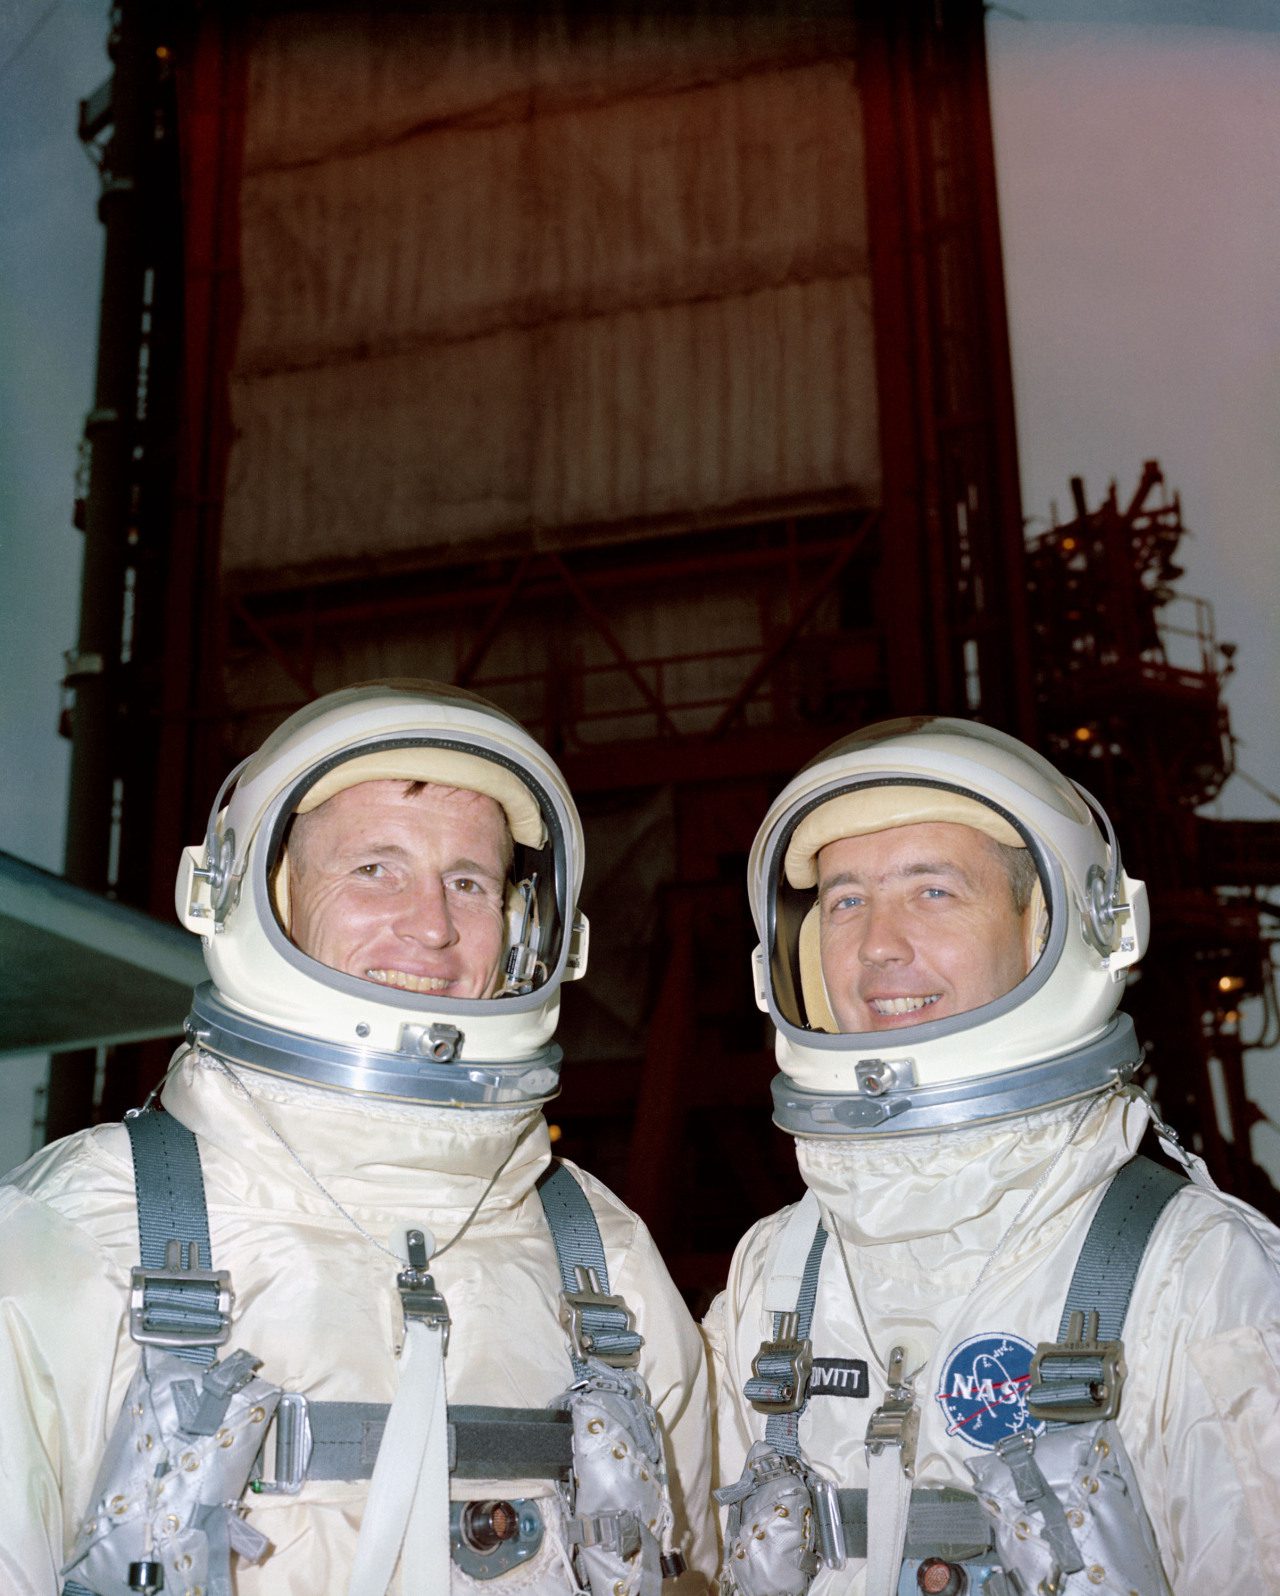 Gemini 4 astronauts Ed White and Jim McDivitt